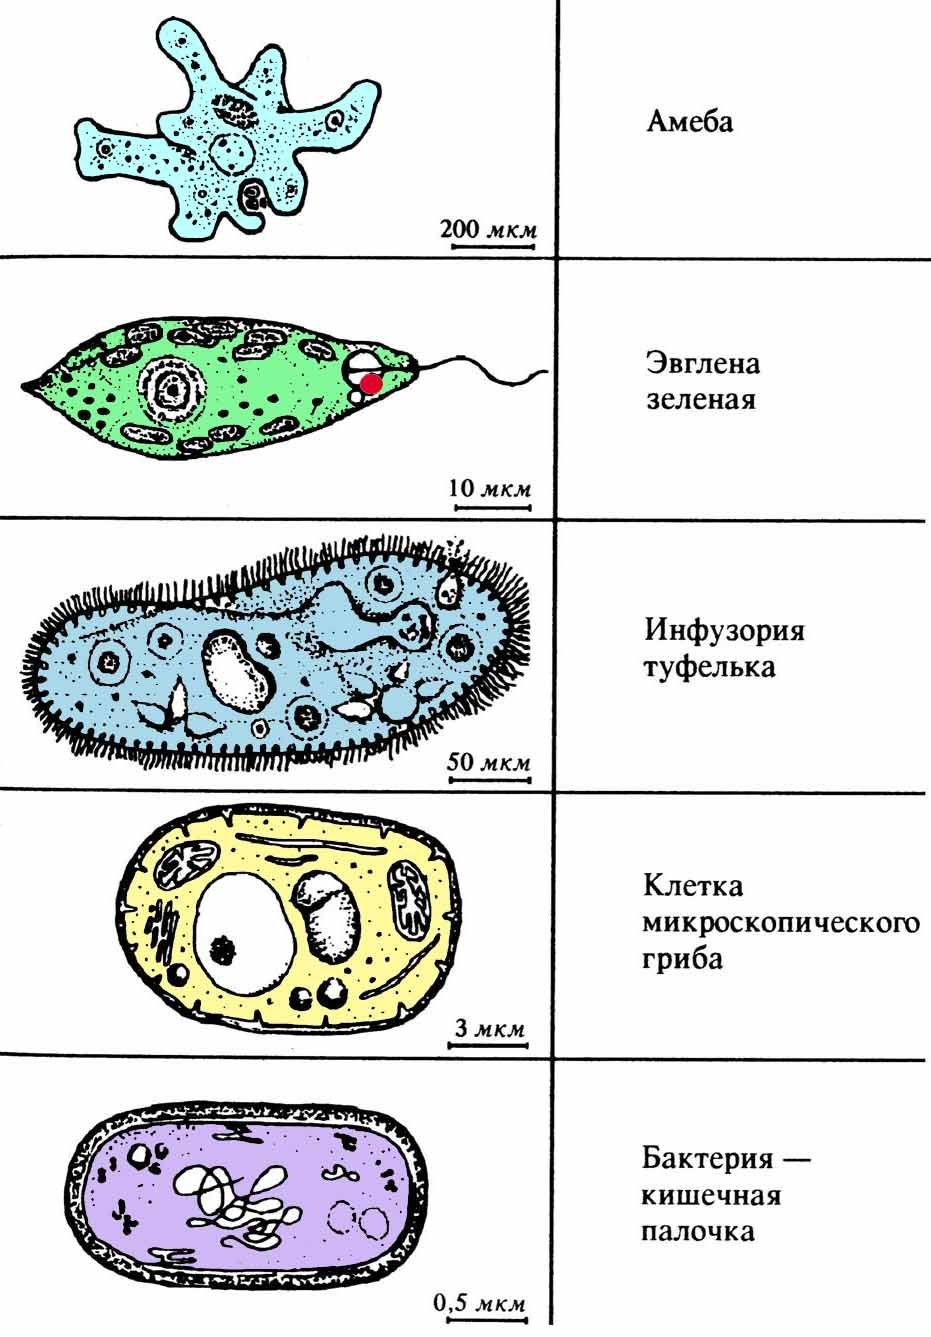 Клетка по биологии инфузория туфелька